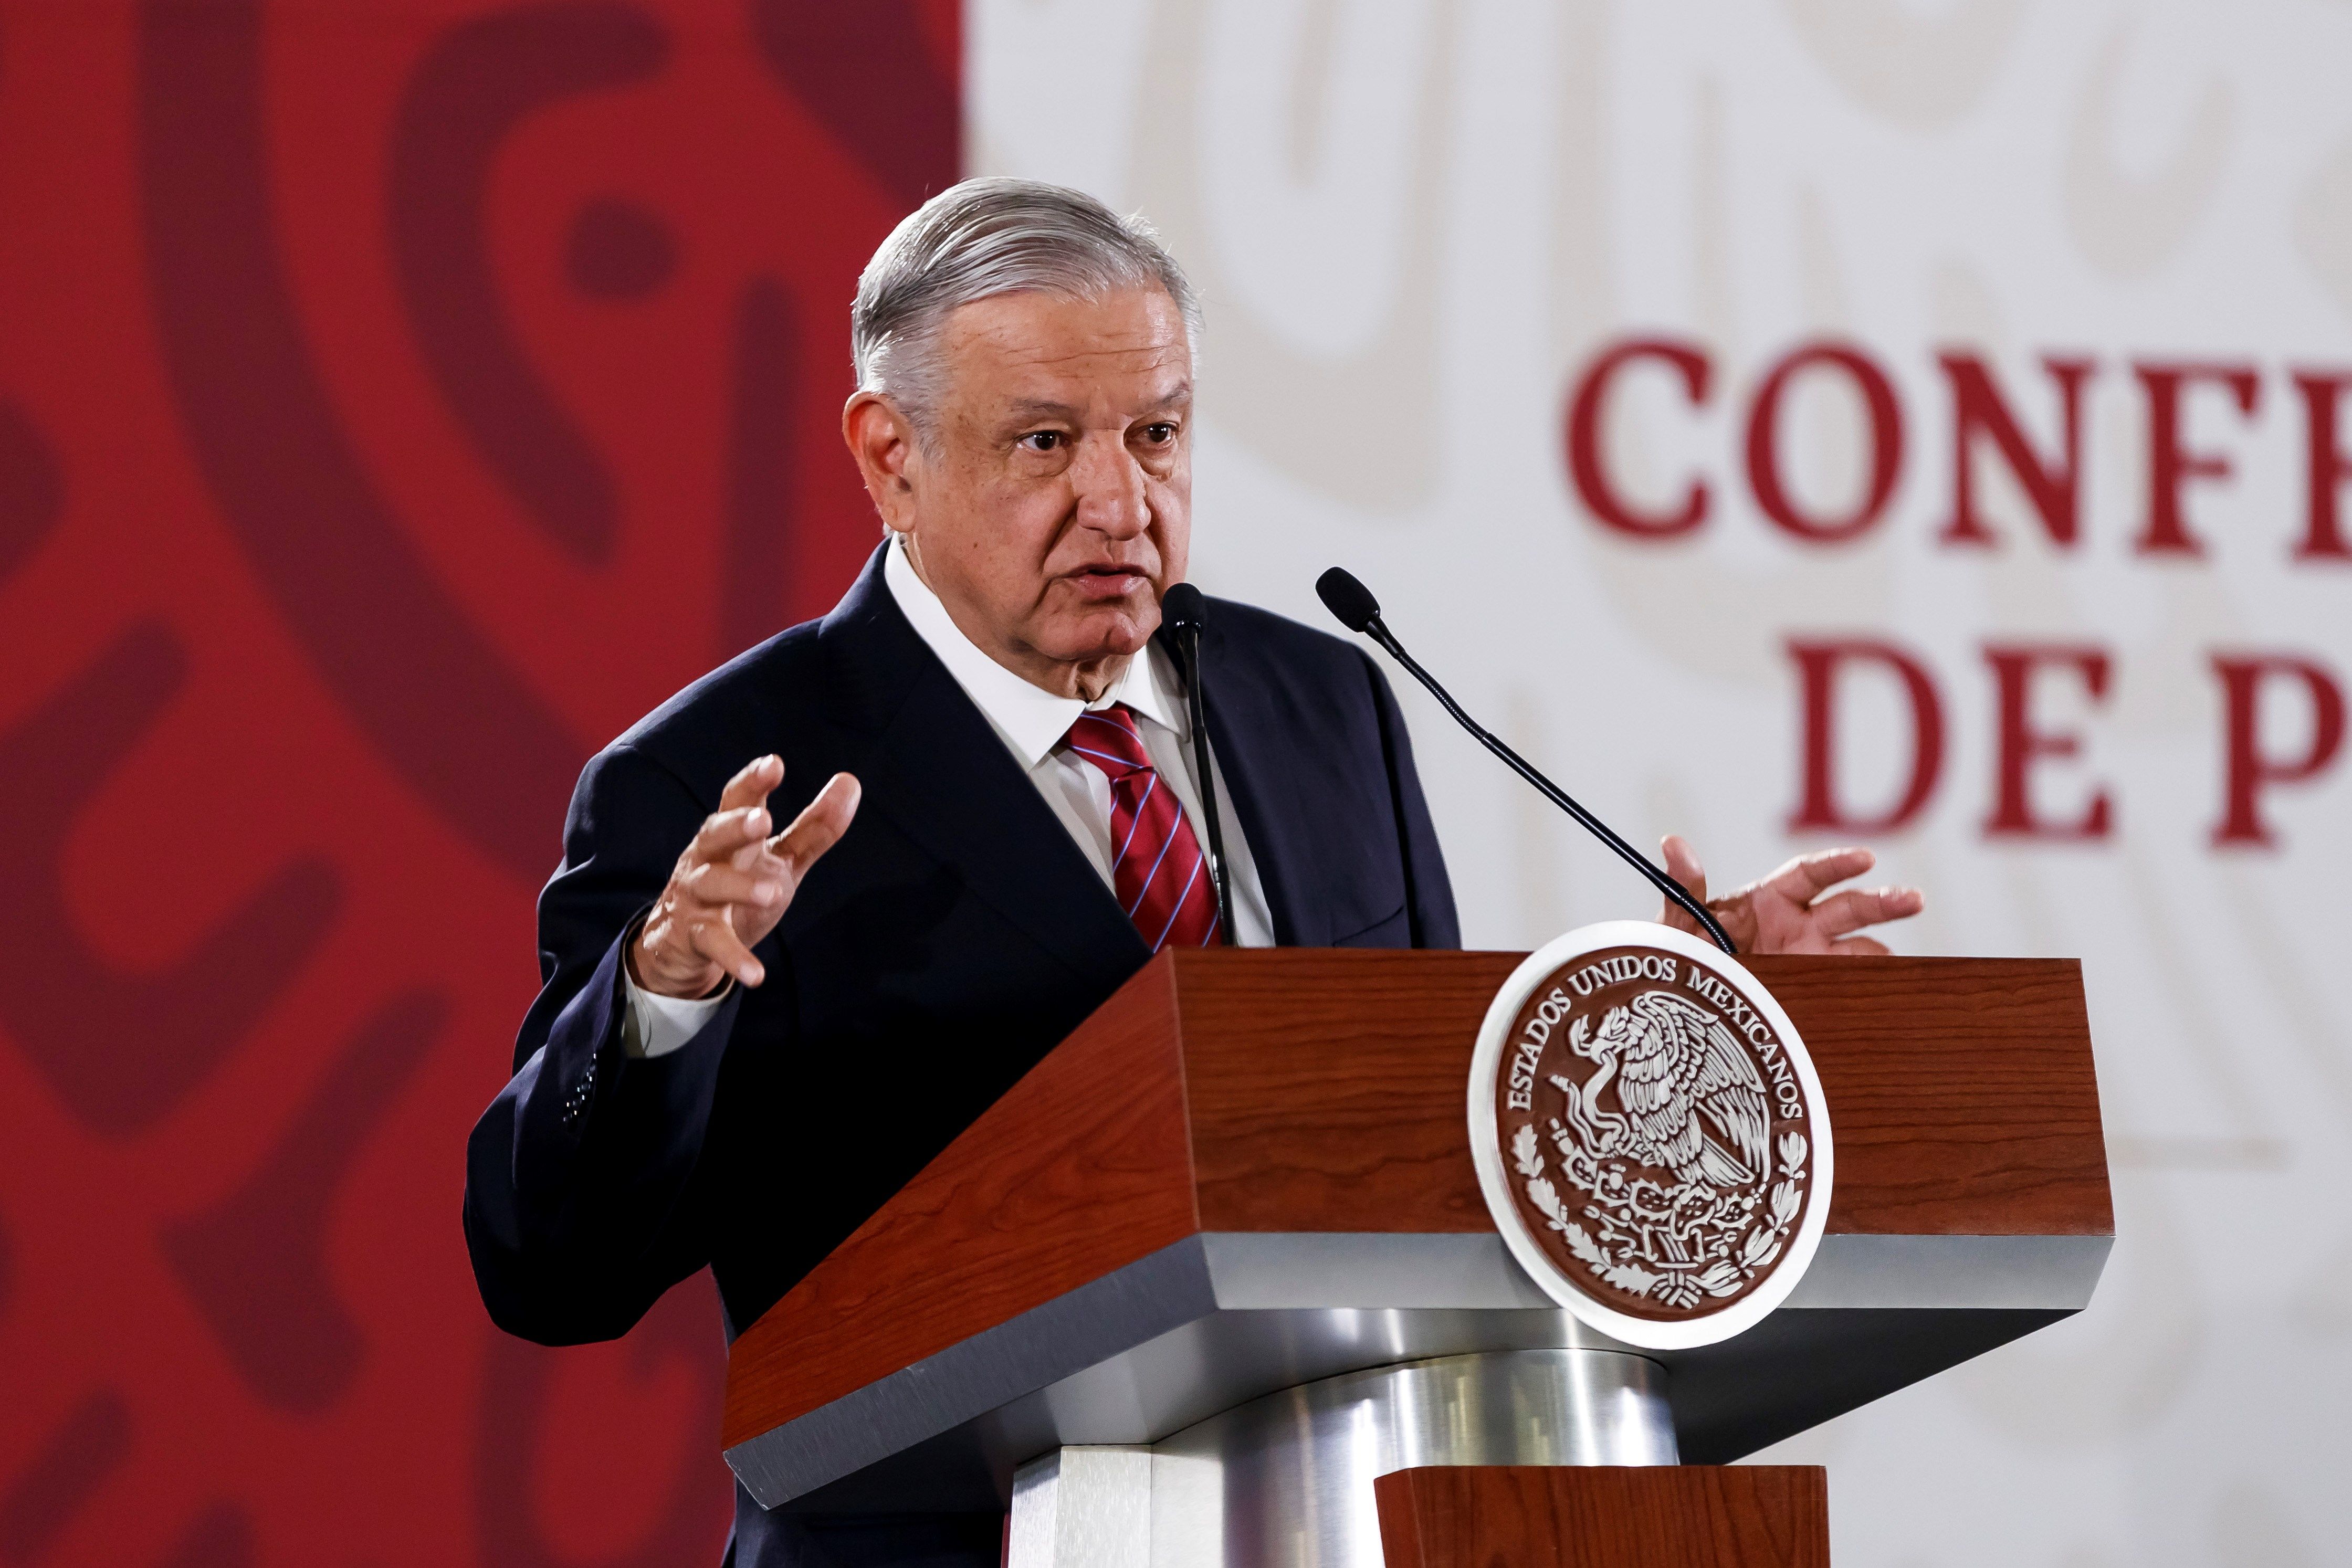  López Obrador y Trump reafirman “amistad y cooperación” en llamada telefónica